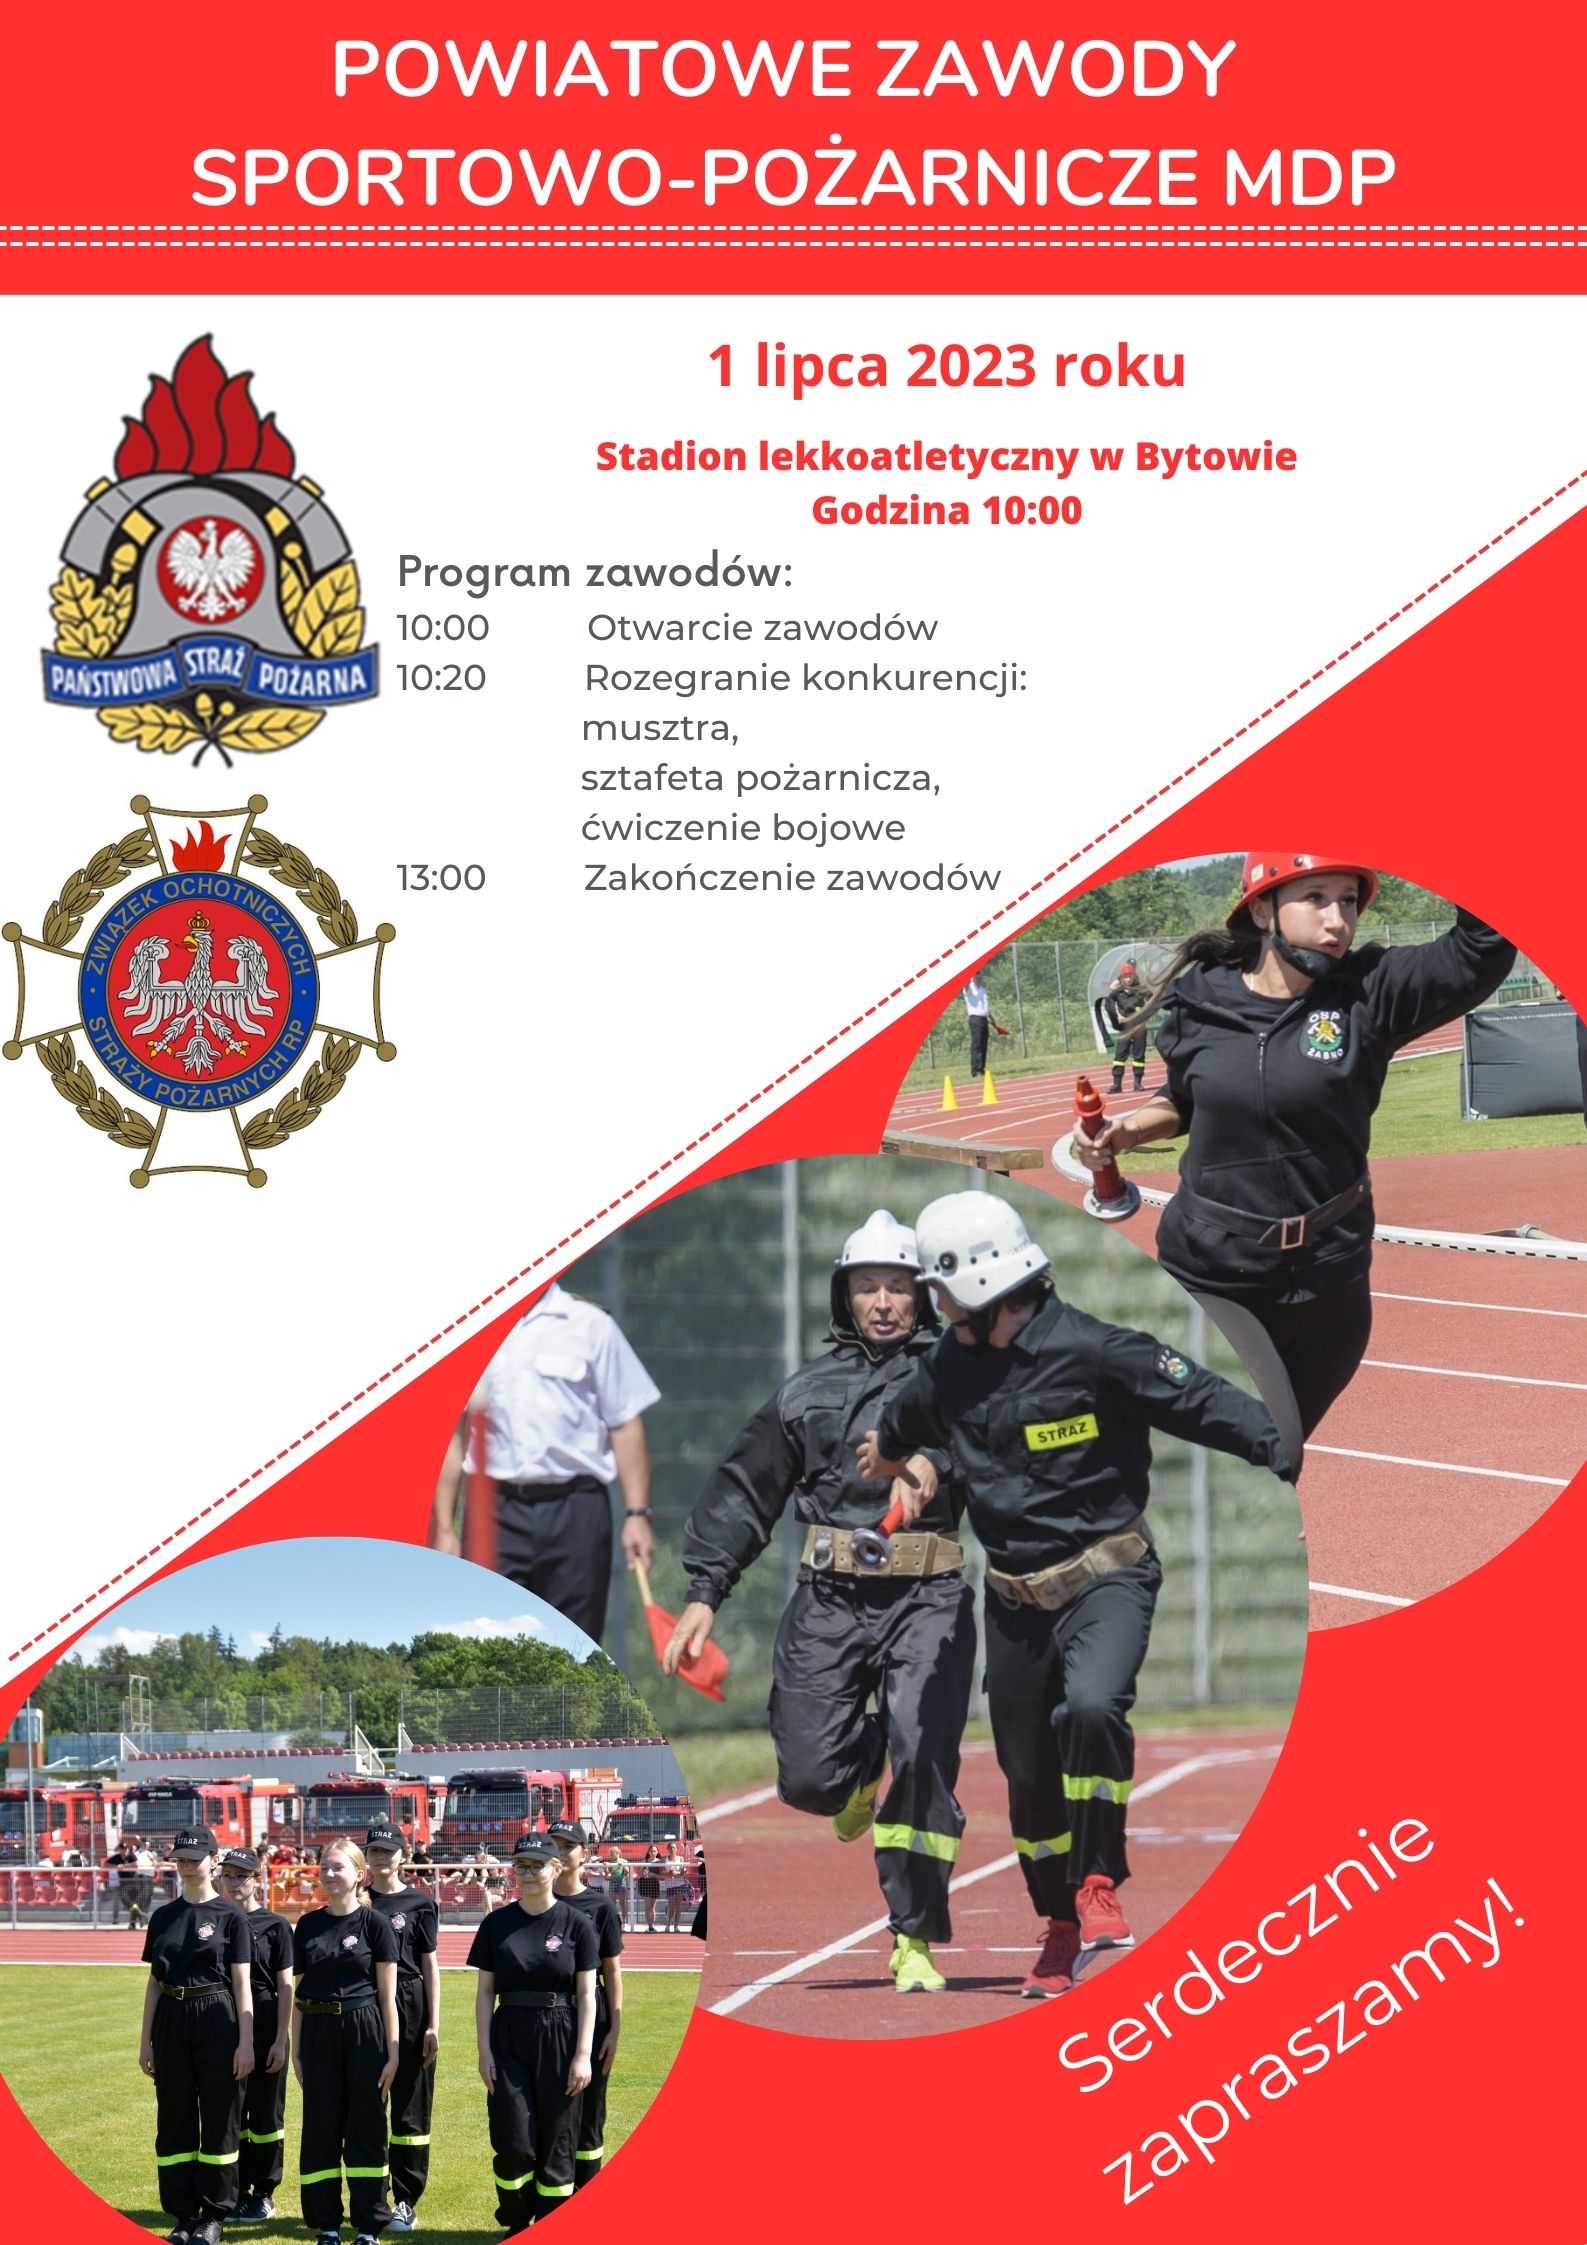 Powiatowe Zawody Sportowo-Pożarnicze MDP